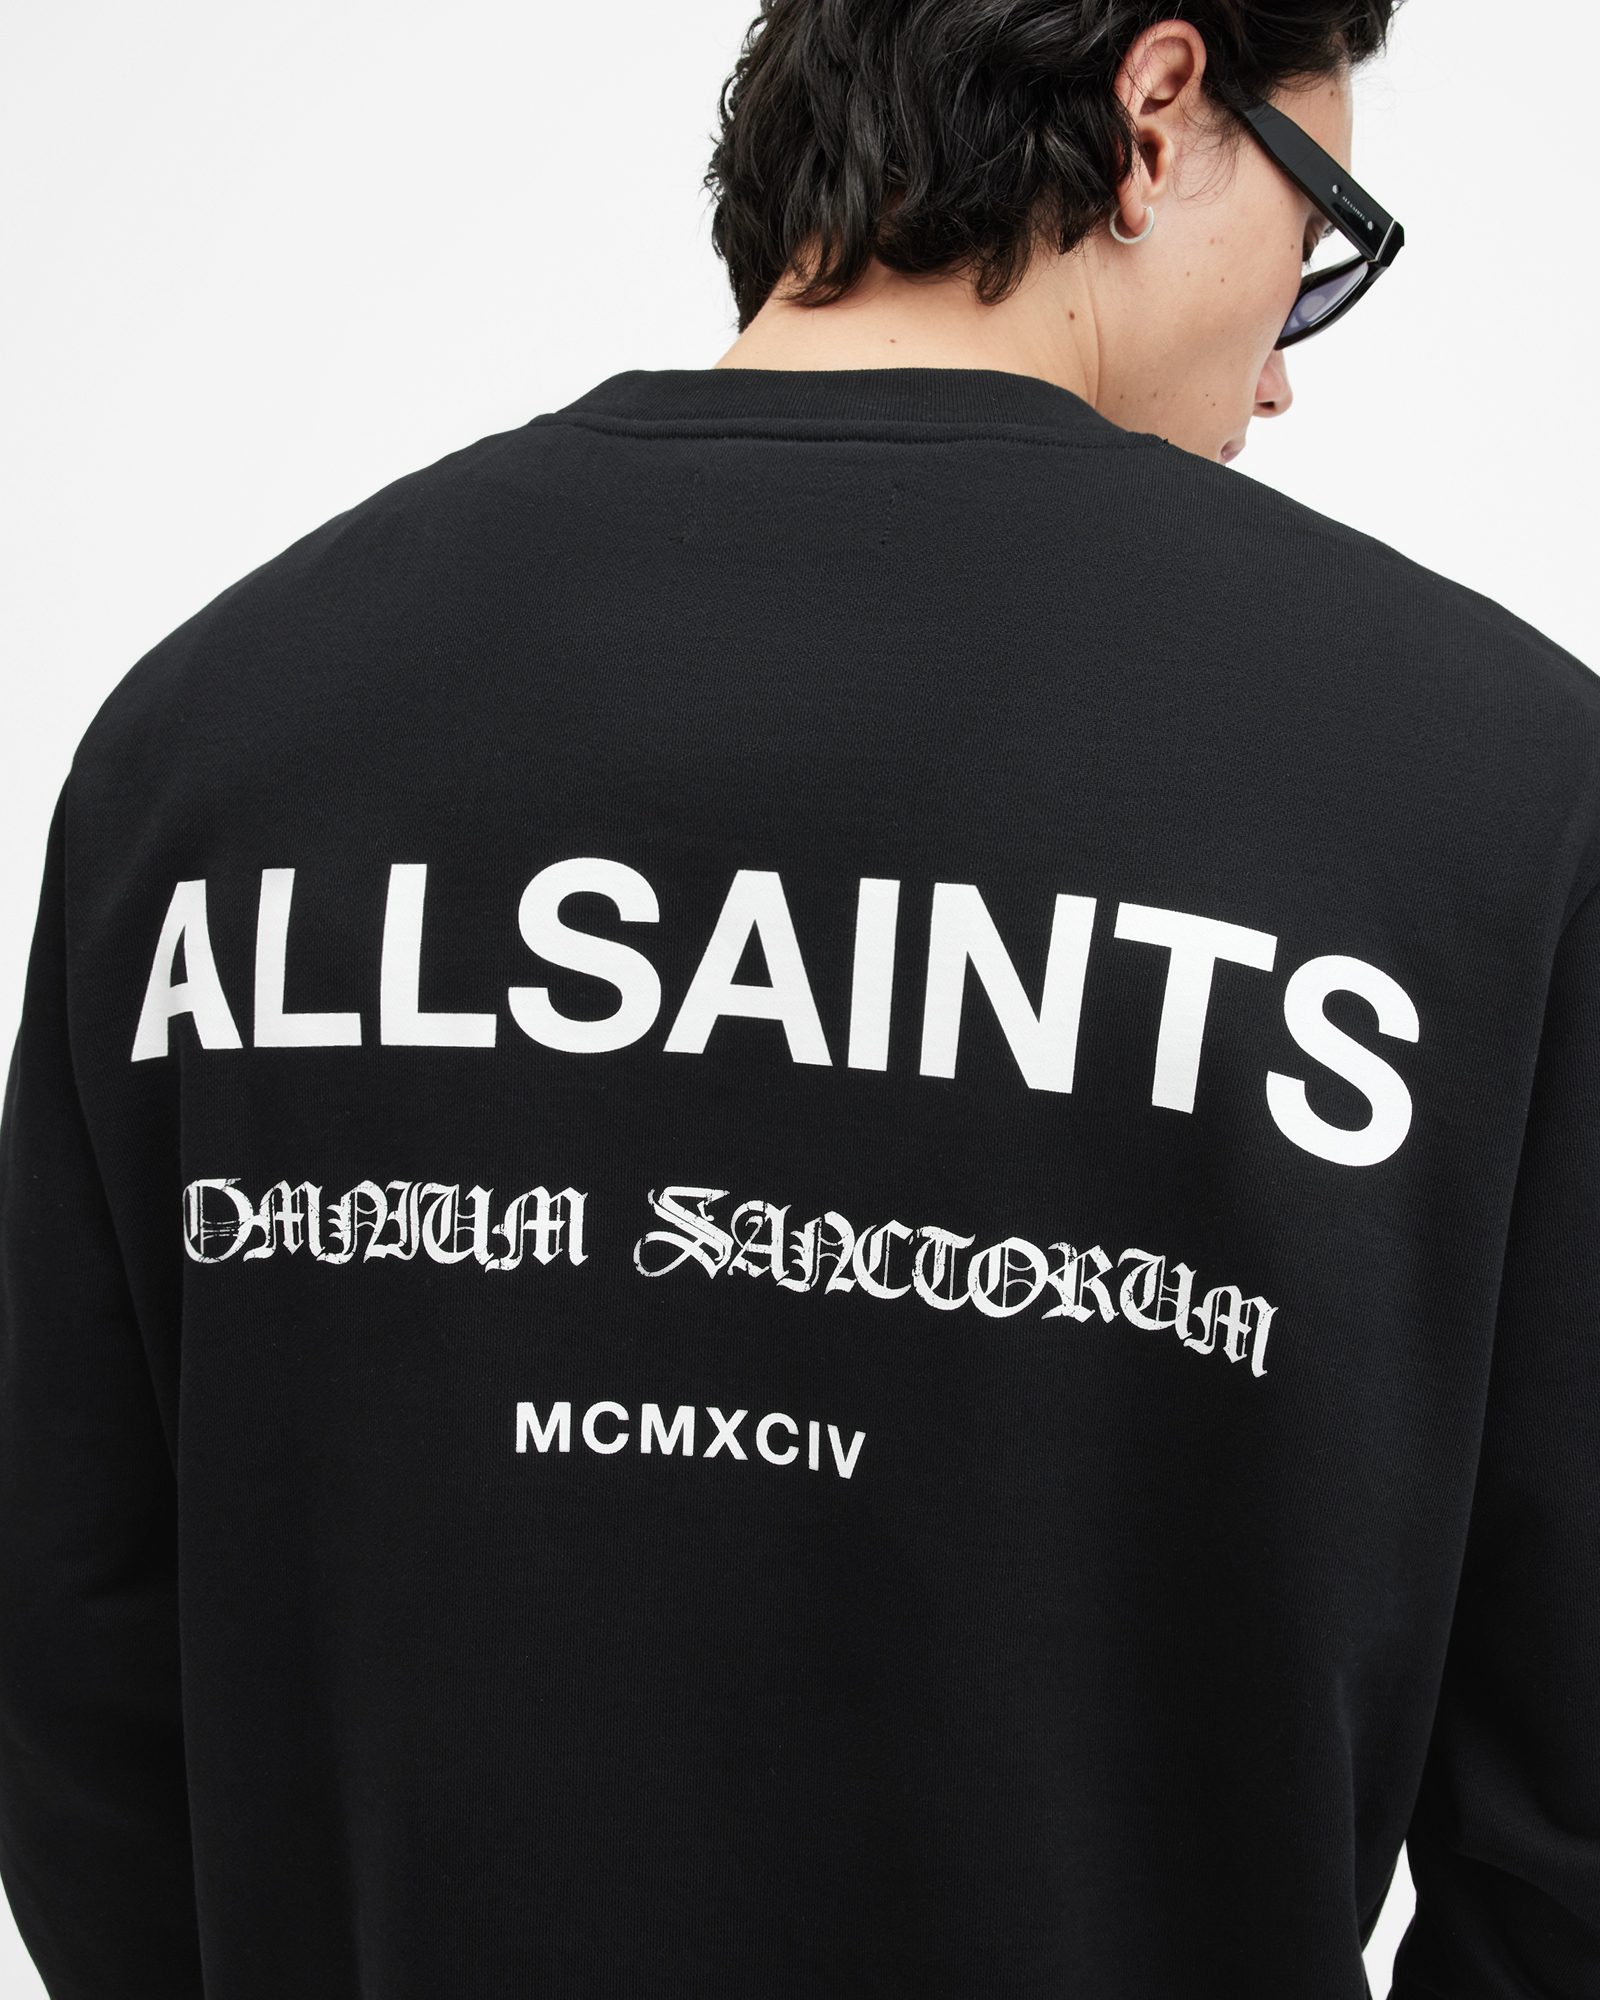 AllSaints Sanctum Relaxed Fit Gothic Logo Sweatshirt,, Jet Black